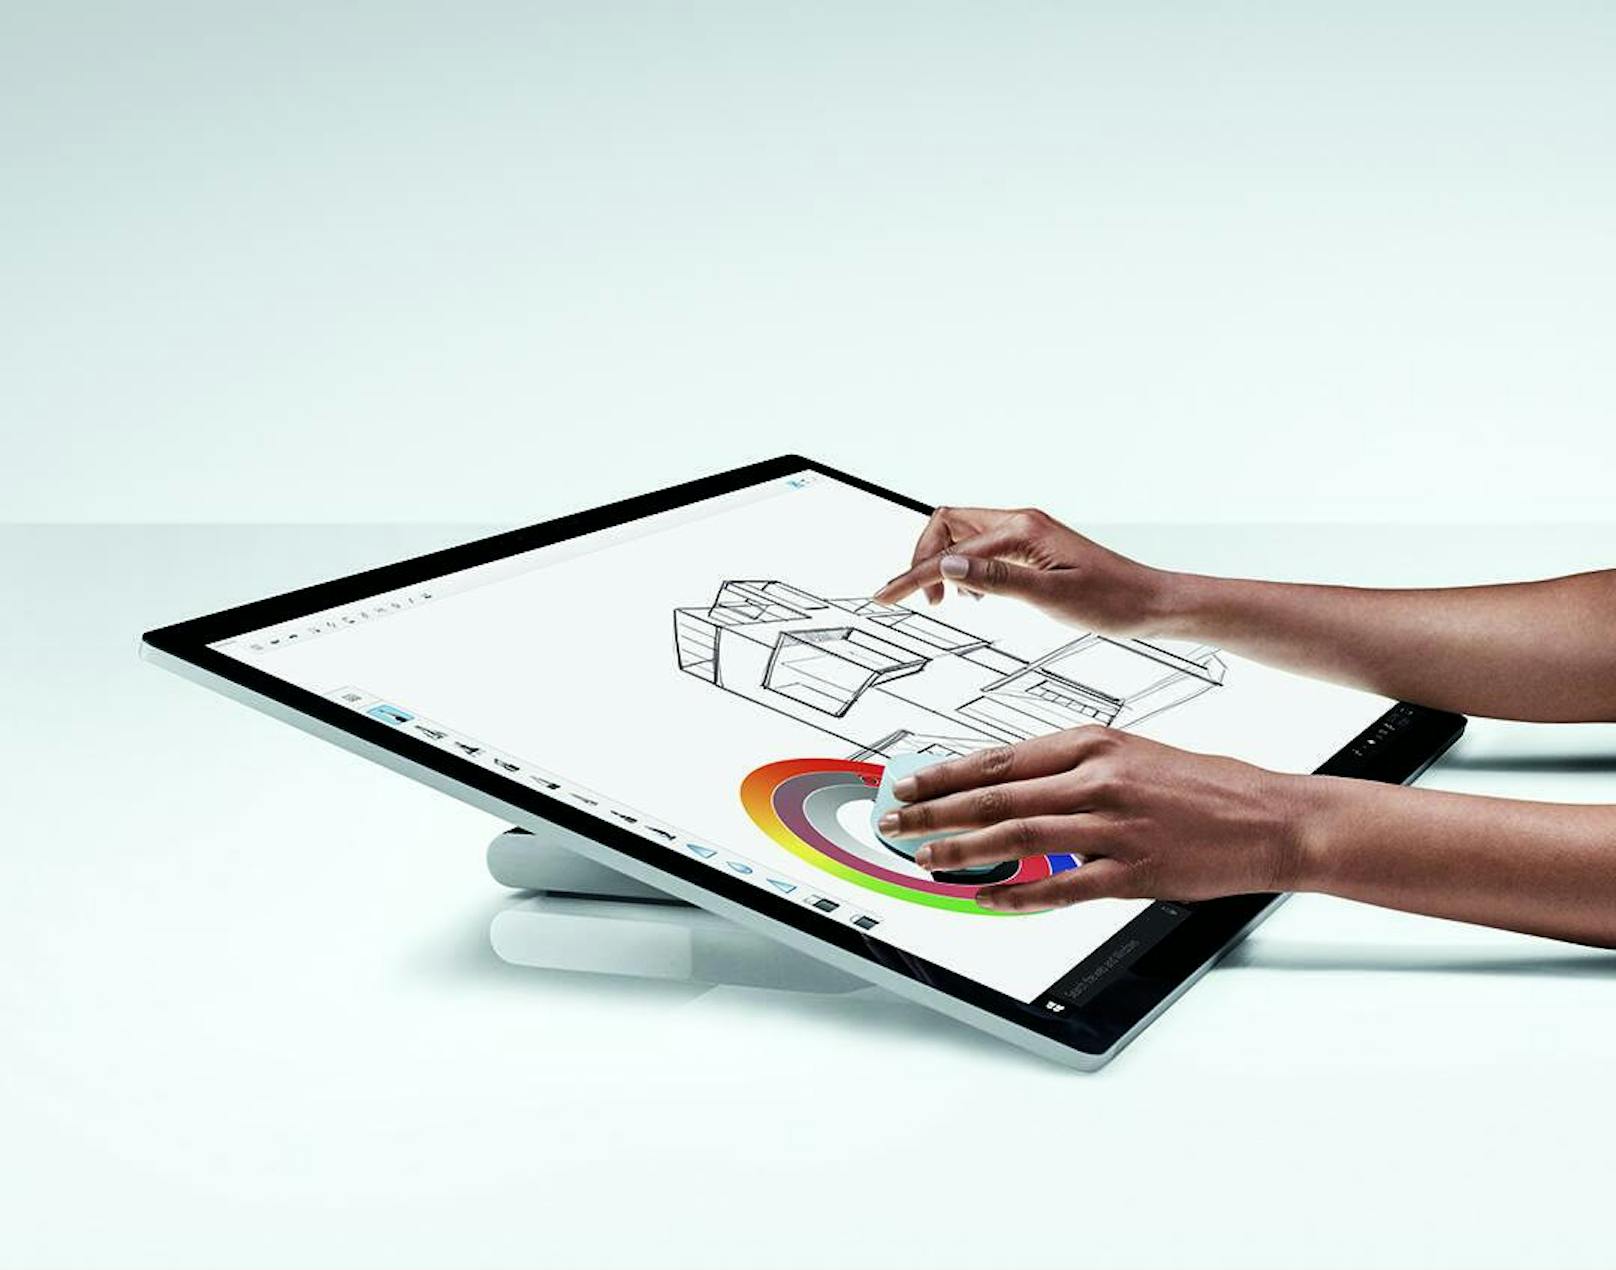 Das Surface Studio 2 bietet USB-C-Unterstützung sowie flüssige Gaming-Performance unter Xbox Wireless und beinhaltet den neuesten Surface Pen. Der Euro-Preis ist noch nicht bekannt, der Vorgänger, der beim Start mindestens 3.549 Euro kostete, lag zuletzt bei mindestens 2.299 Euro.